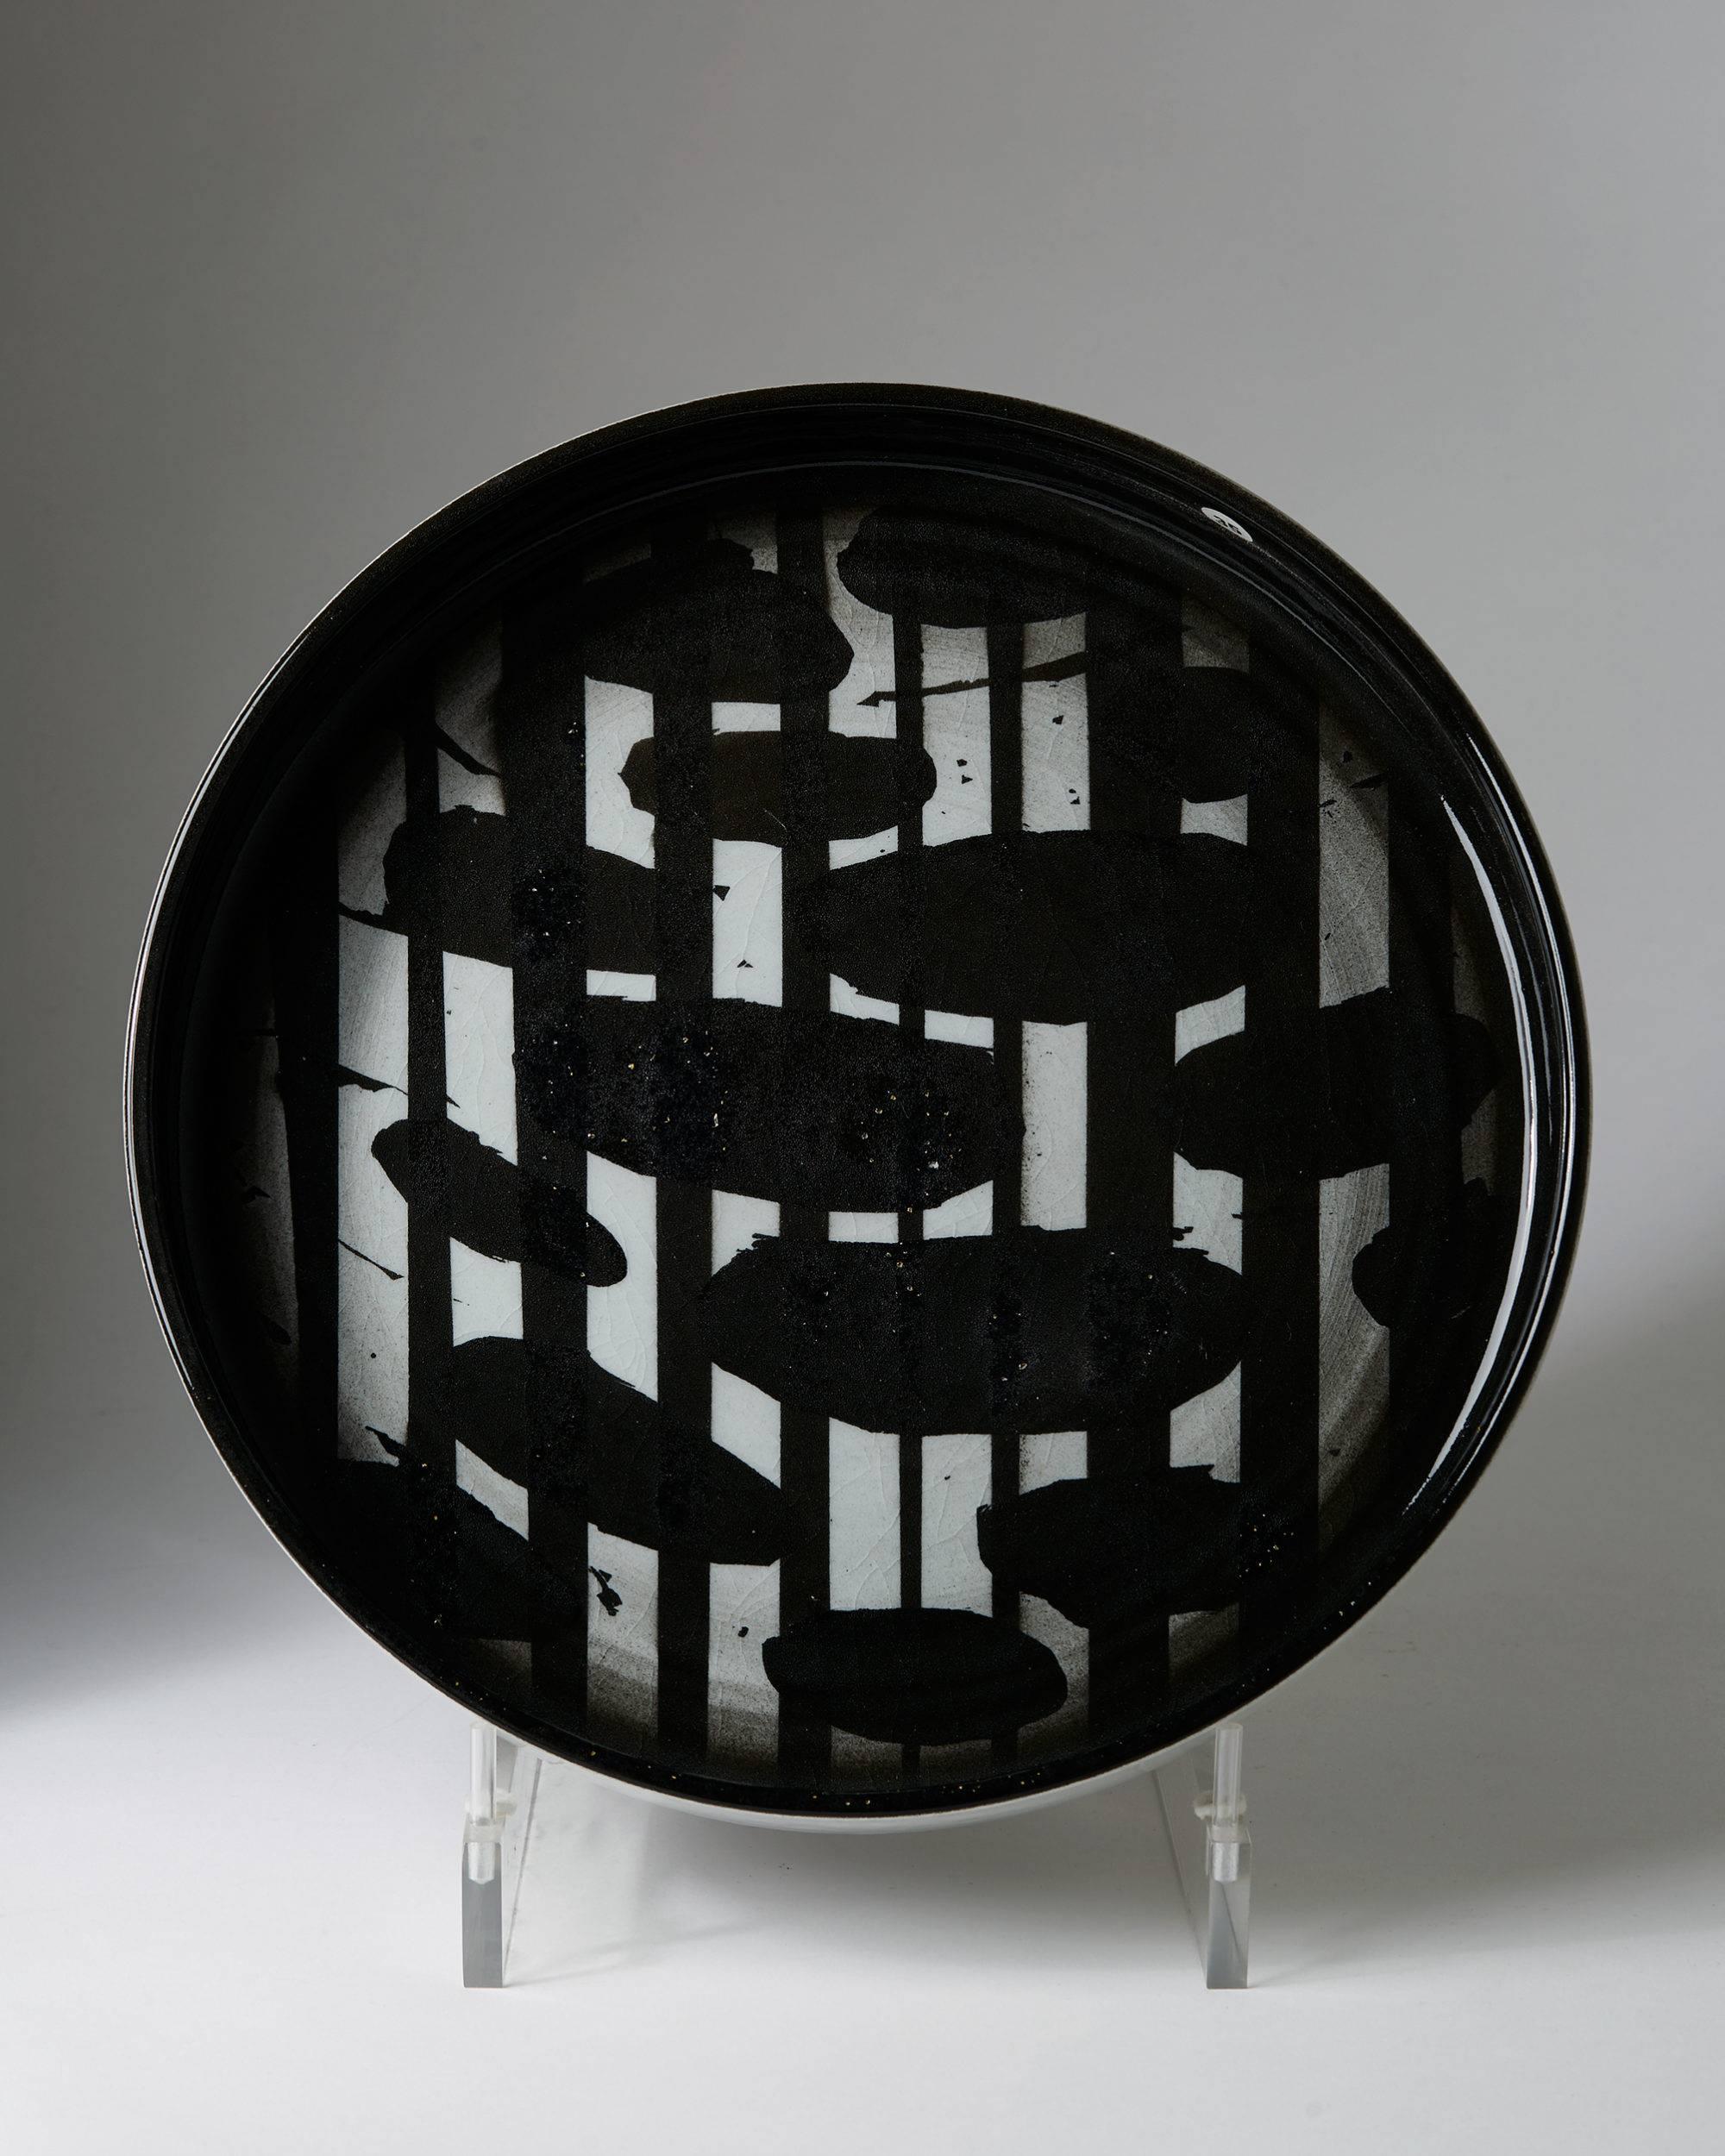 Dish designed by Carl-Harry Stålhane for Designhuset, 
Sweden, 1983.

Stoneware.

Measuresments:
D: 28.5 cm/ 11 1/4